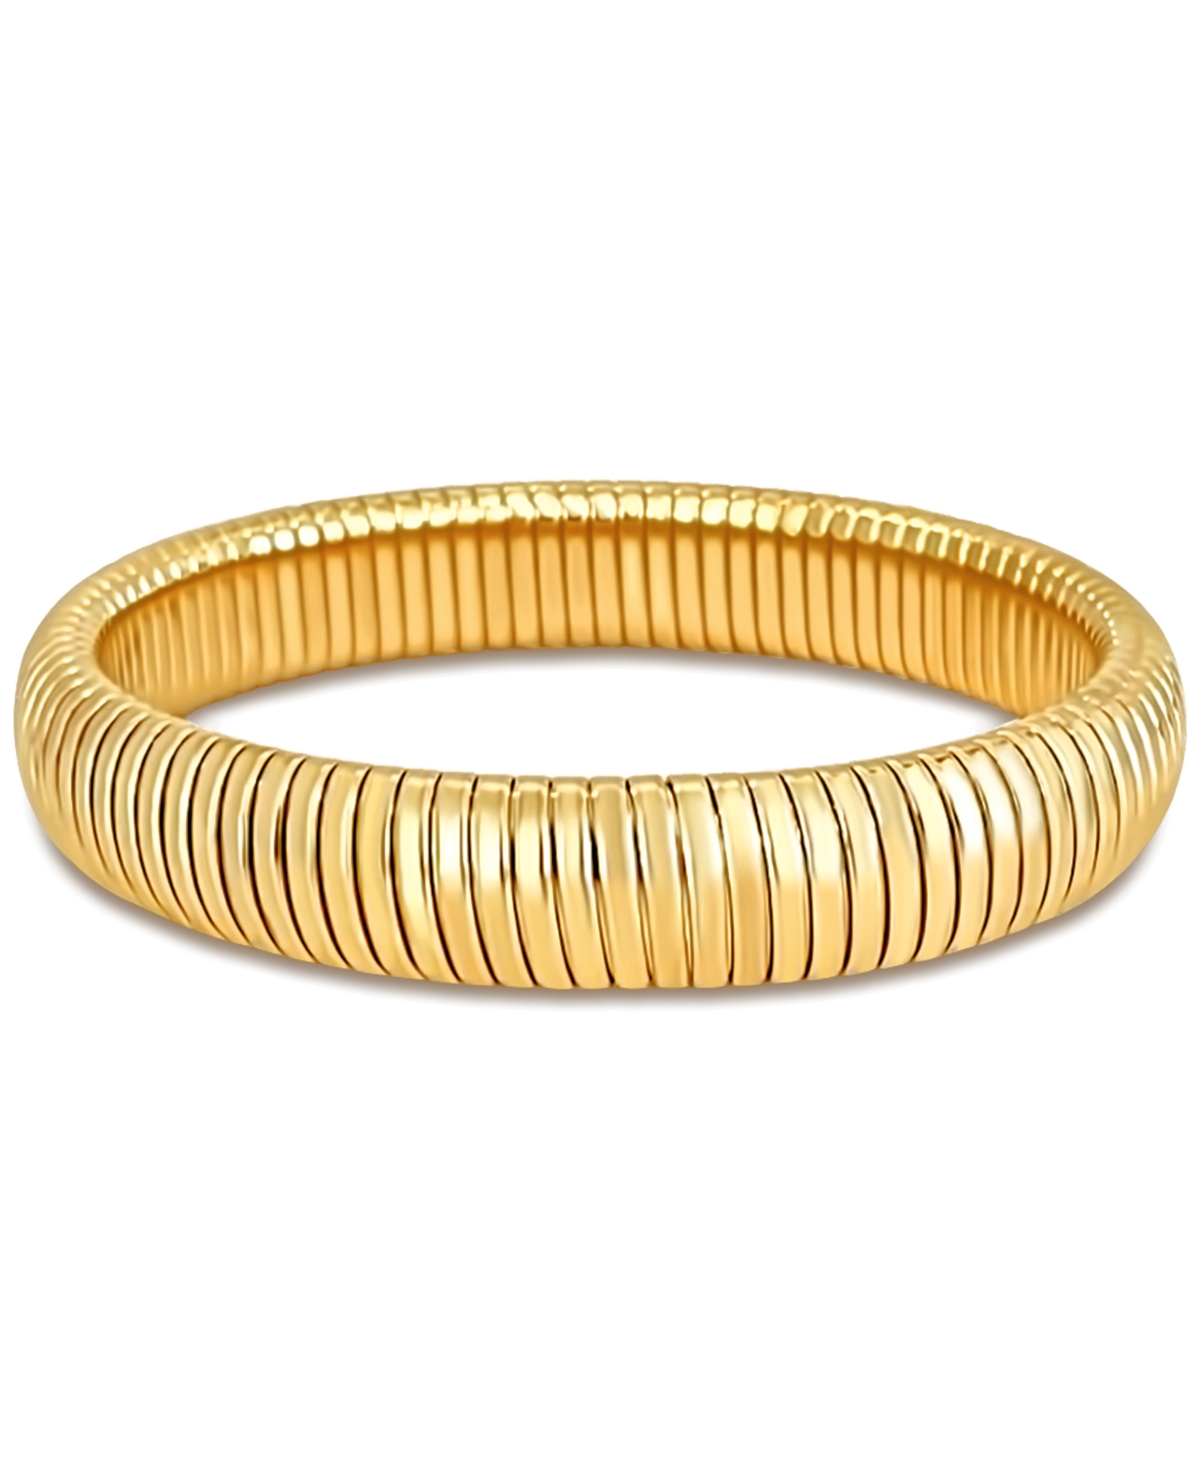 Sandra Coil Bangle Bracelet - Gold